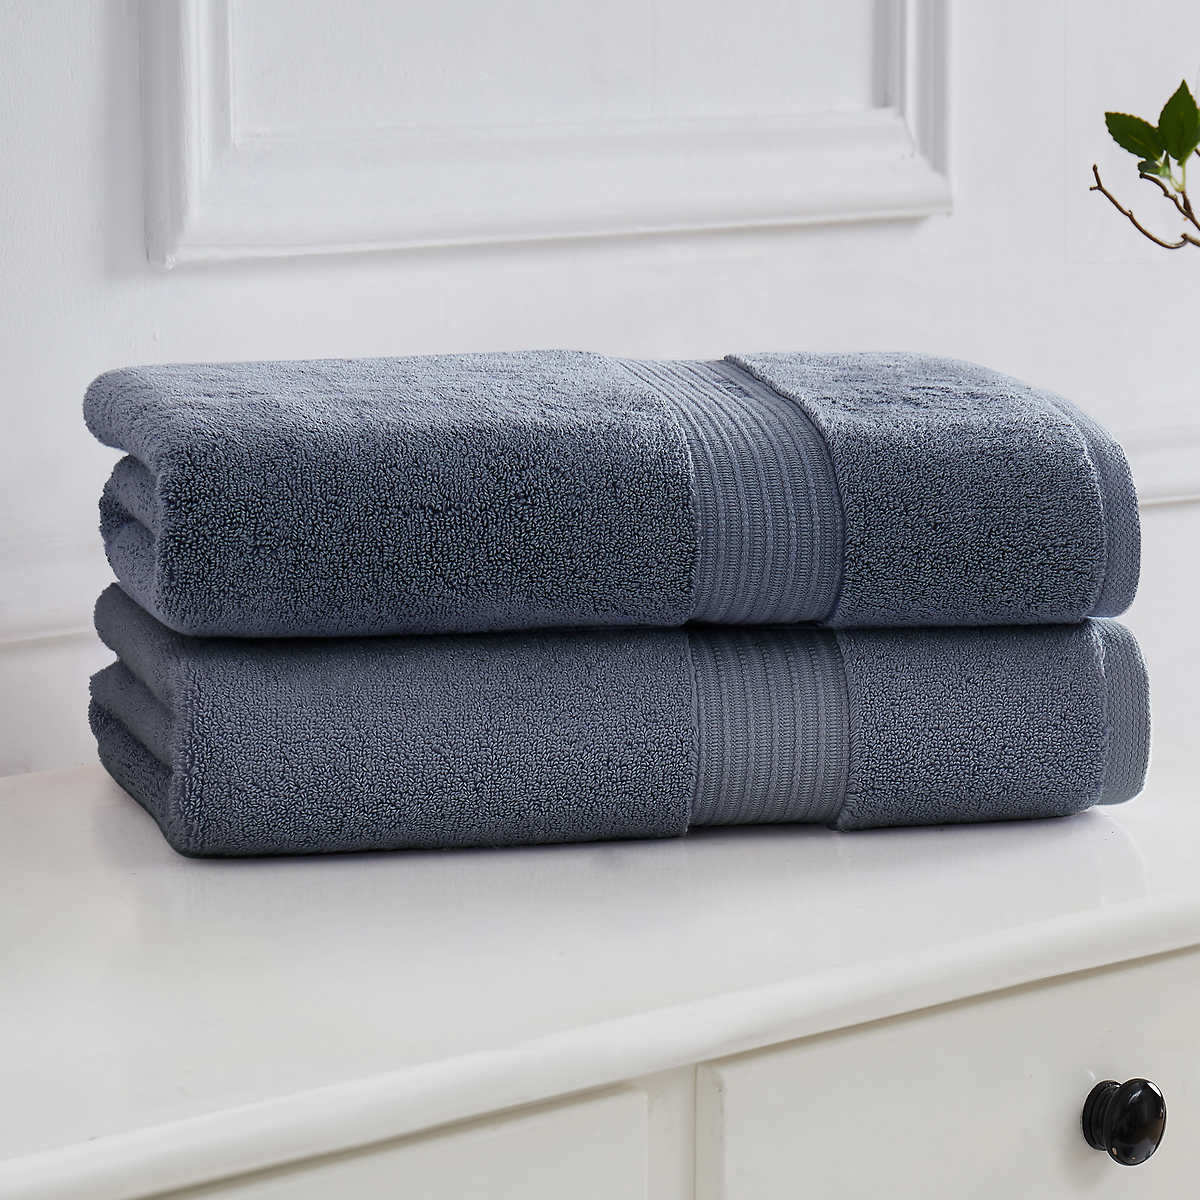 Calvin Klein 4-piece Hand/Washcloth Towel set